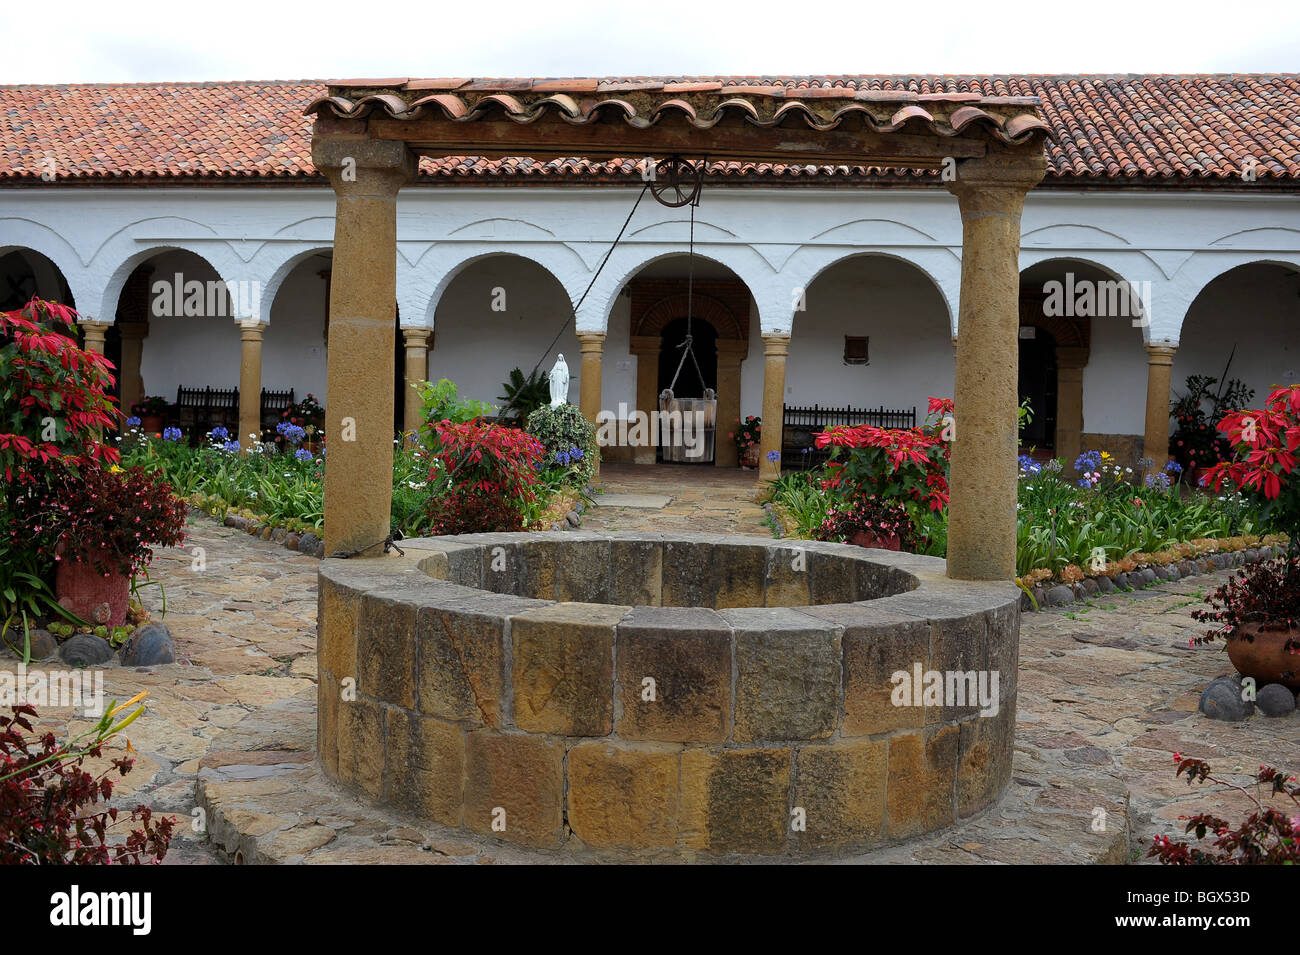 Convento de Santo Ecce Homo cour avec pierres taillée, des fleurs colorées et des chemins bien centrale surround. Colombie Banque D'Images